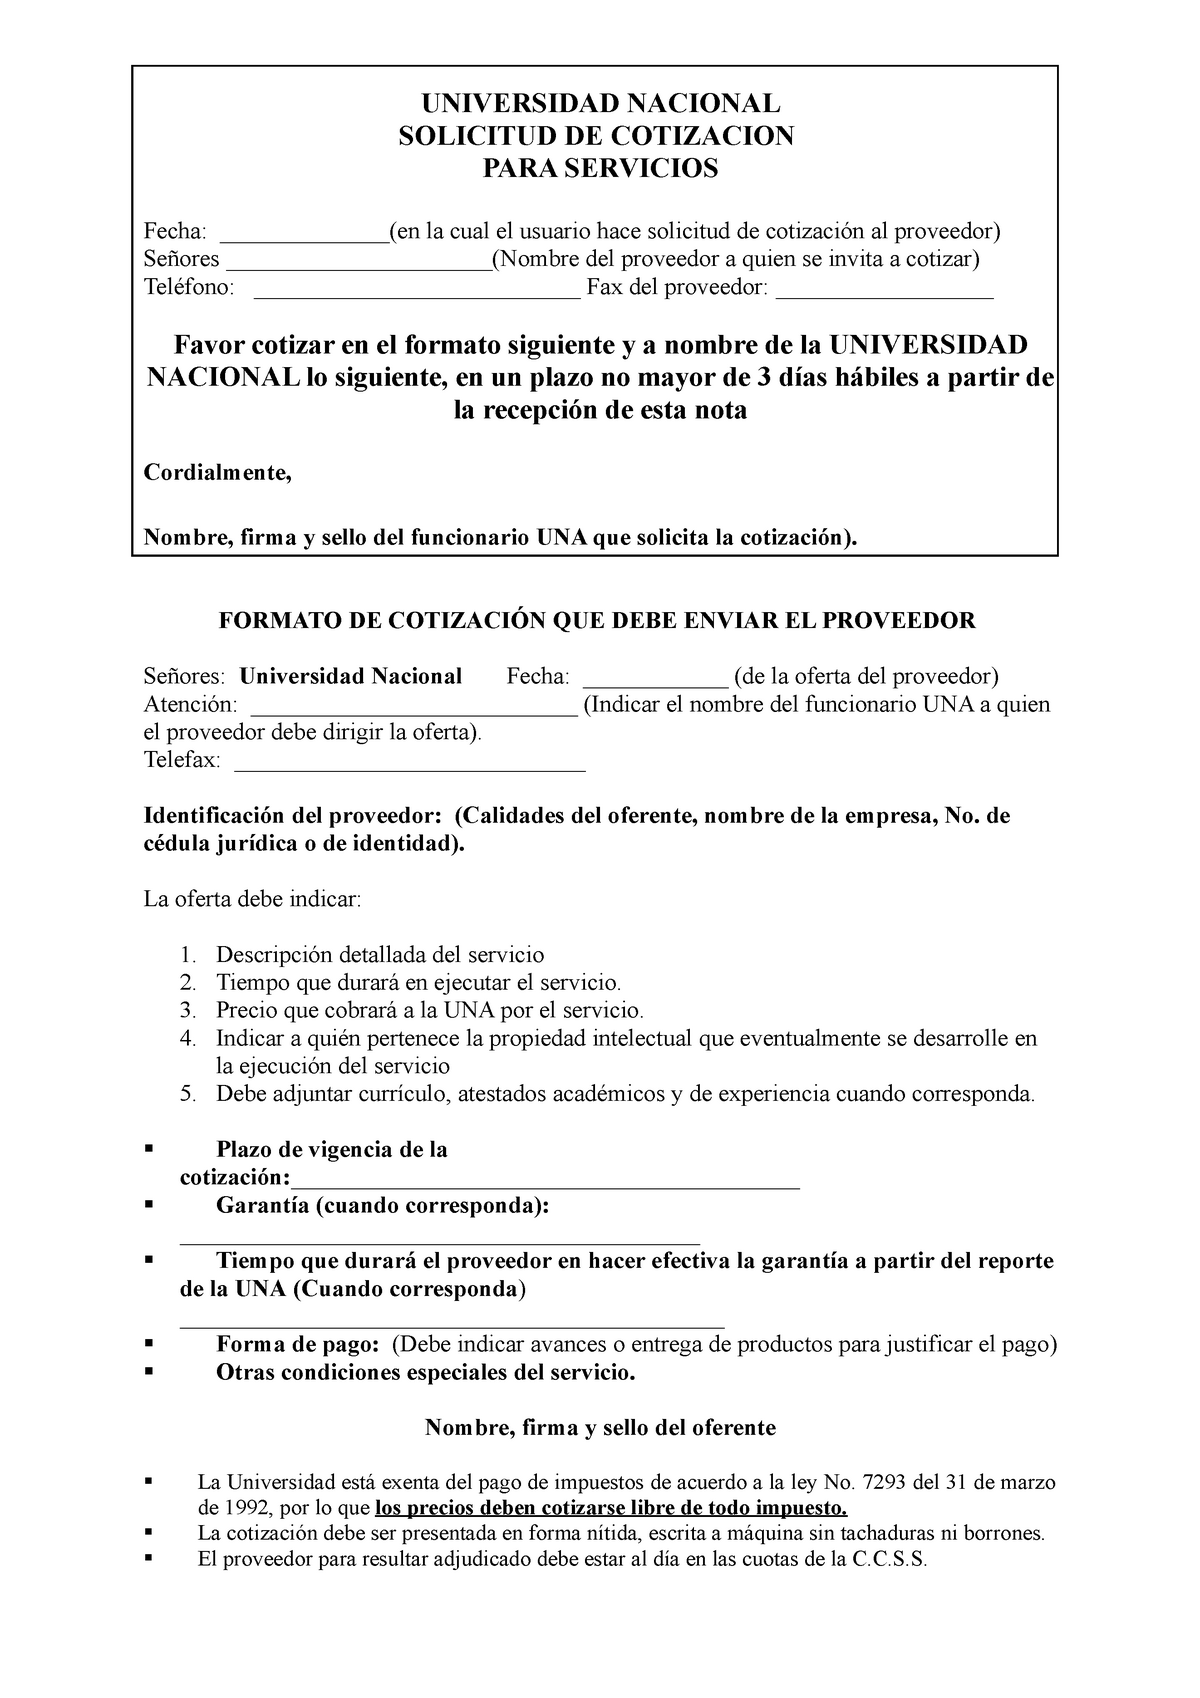 Modelo DE Solicitud DE Cotización No. 2 ( Servicios).278 - UNIVERSIDAD  NACIONAL SOLICITUD DE - Studocu